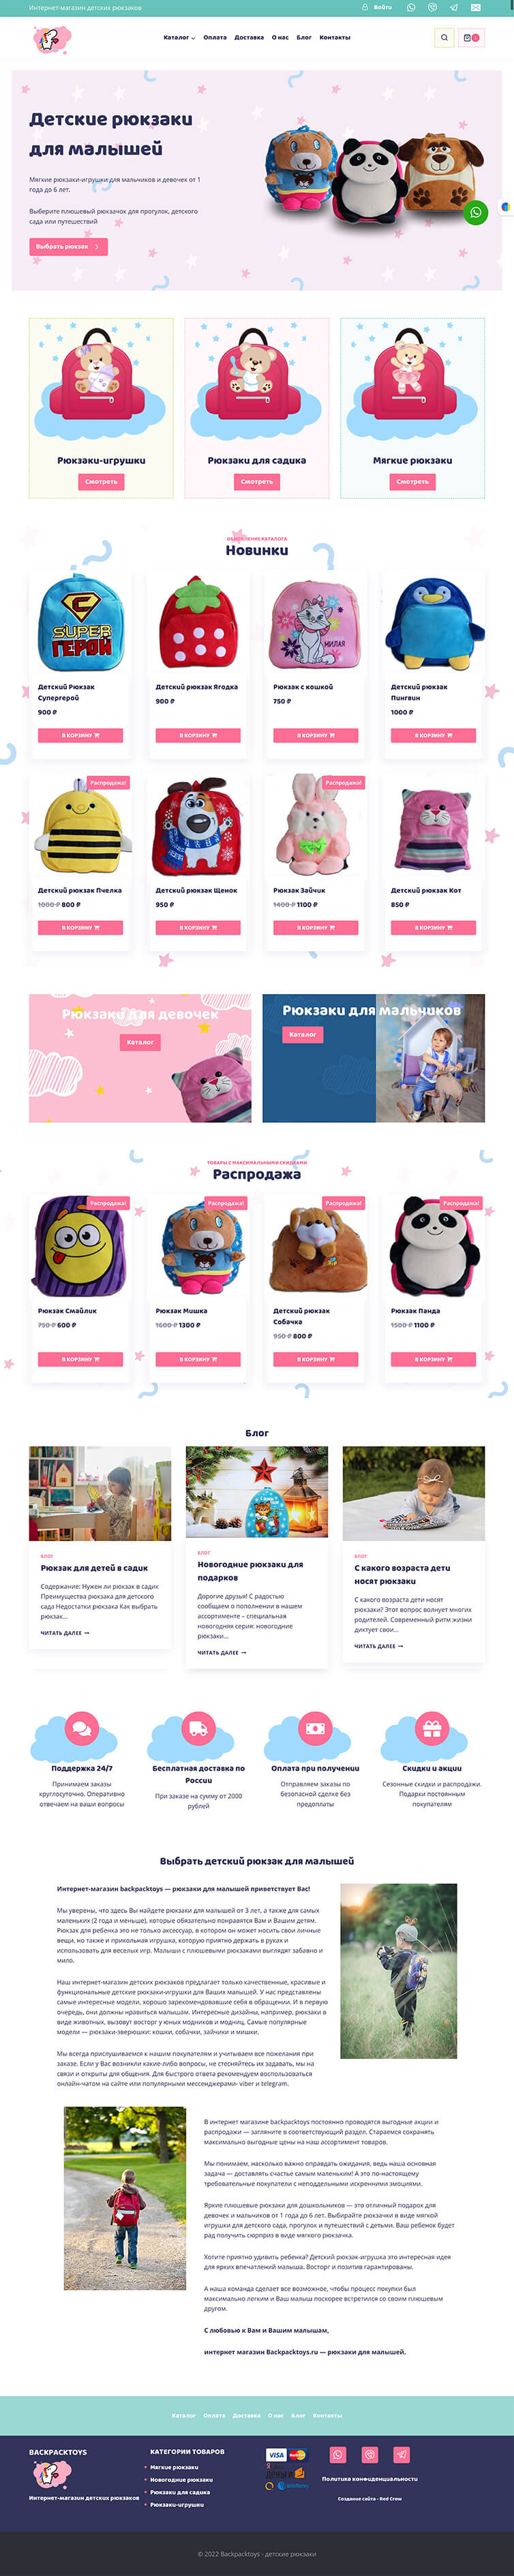 Разработка интернет-магазина детских товаров